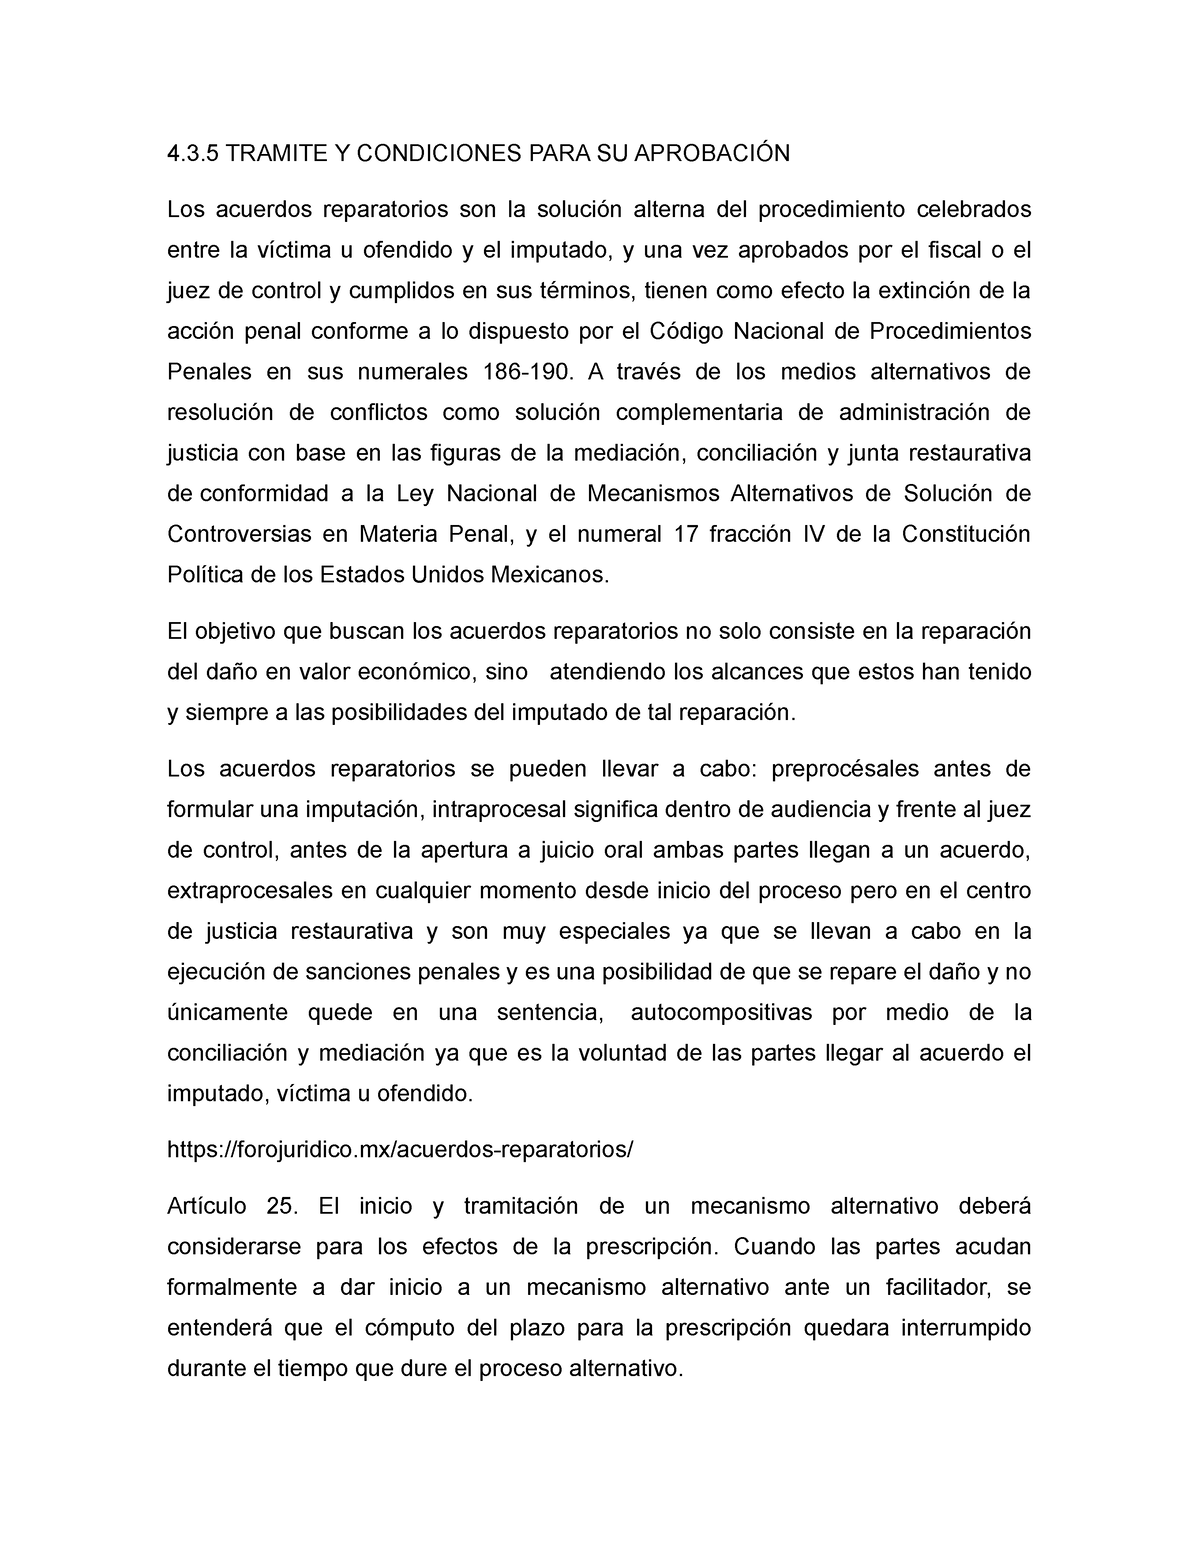 Acuerdo Reparatorio, FORMATO DEL ACUERDO  TRAMITE Y CONDICIONES PARA  SU APROBACIÓN Los acuerdos - Studocu